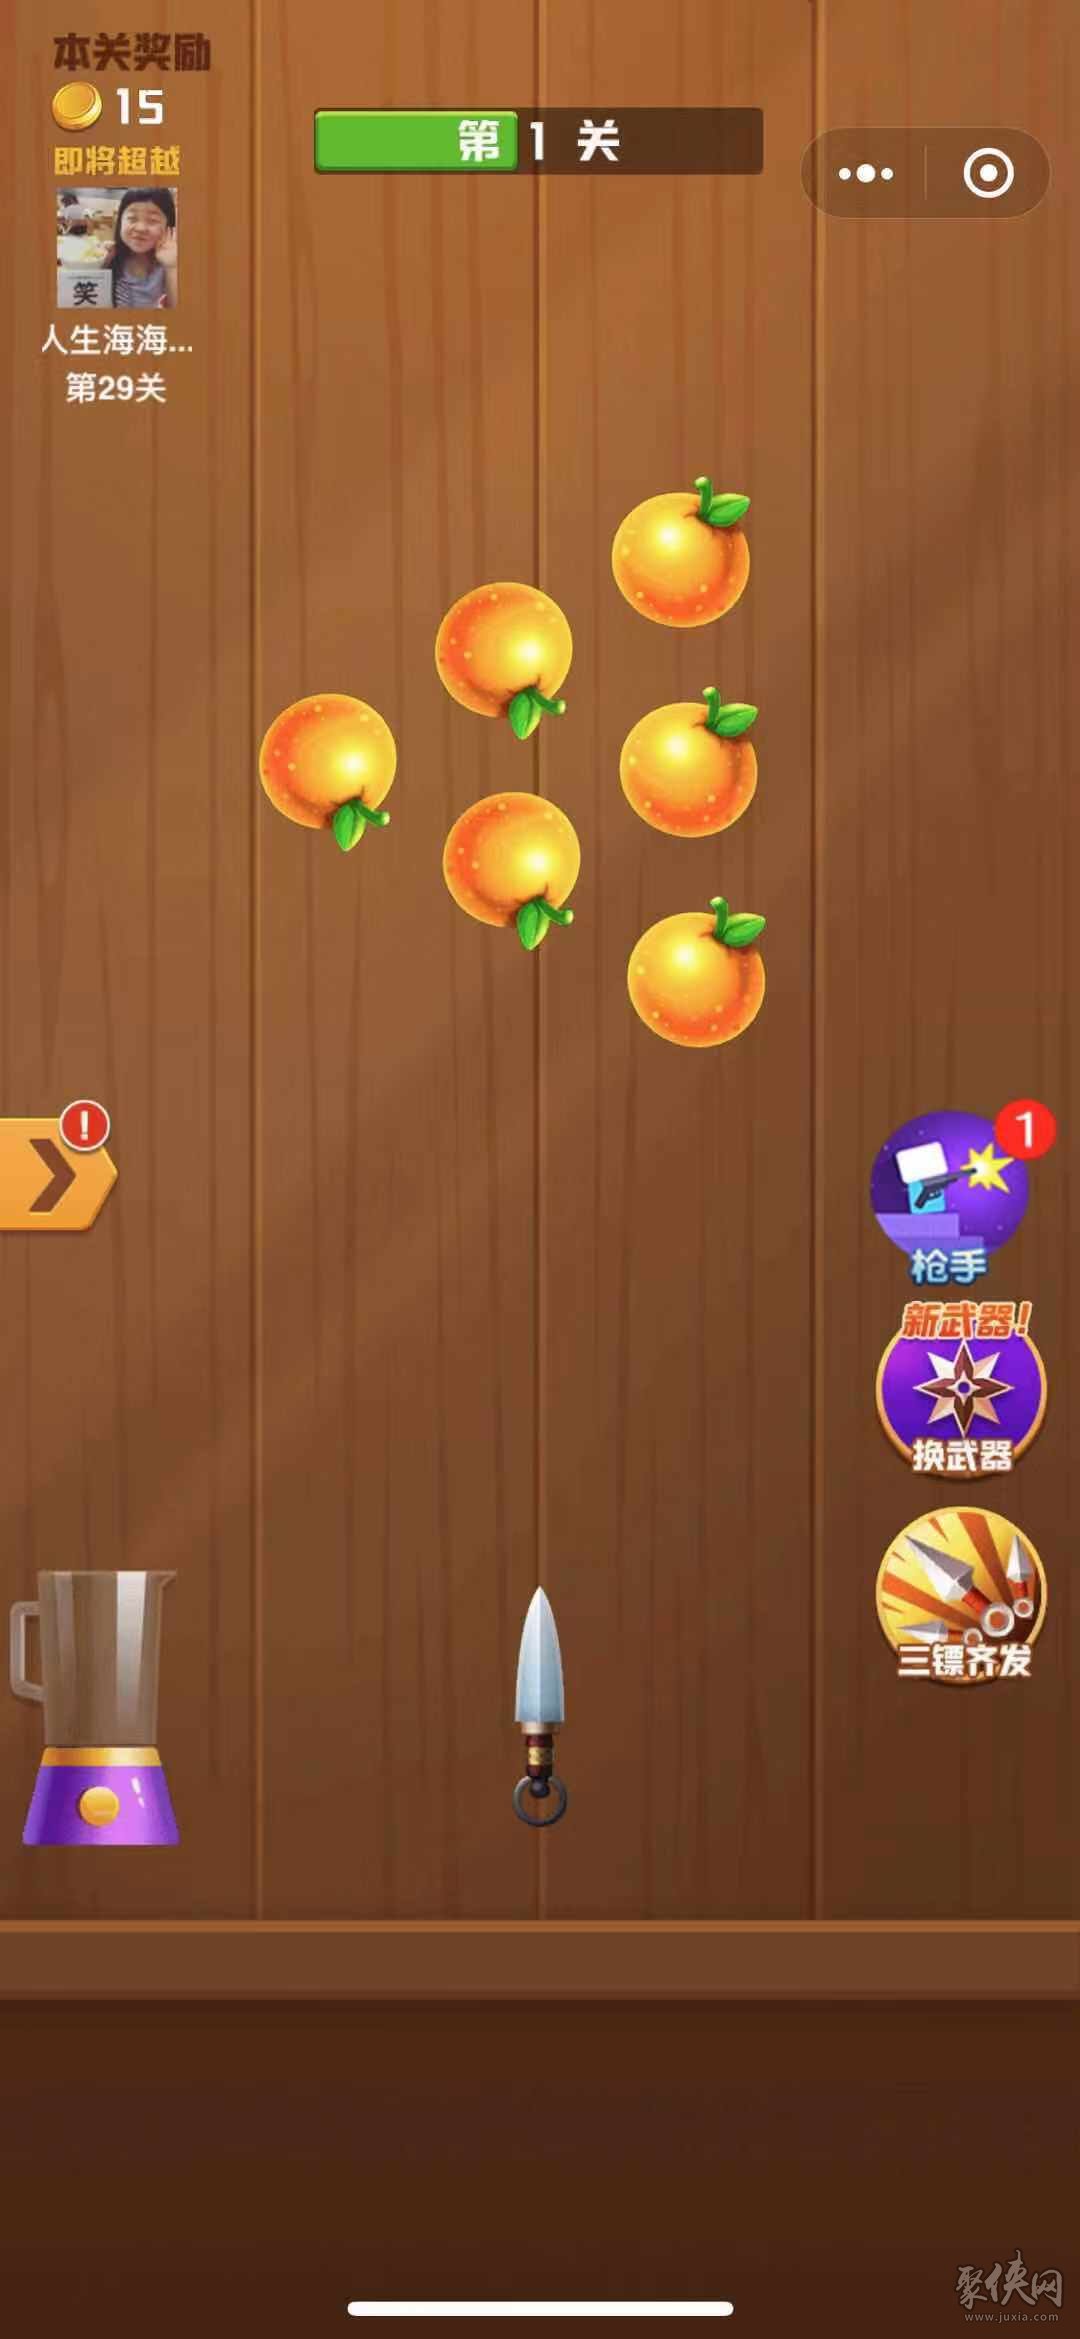 切水果游戏软件_快速切水果游戏_快刀切水果游戏下载